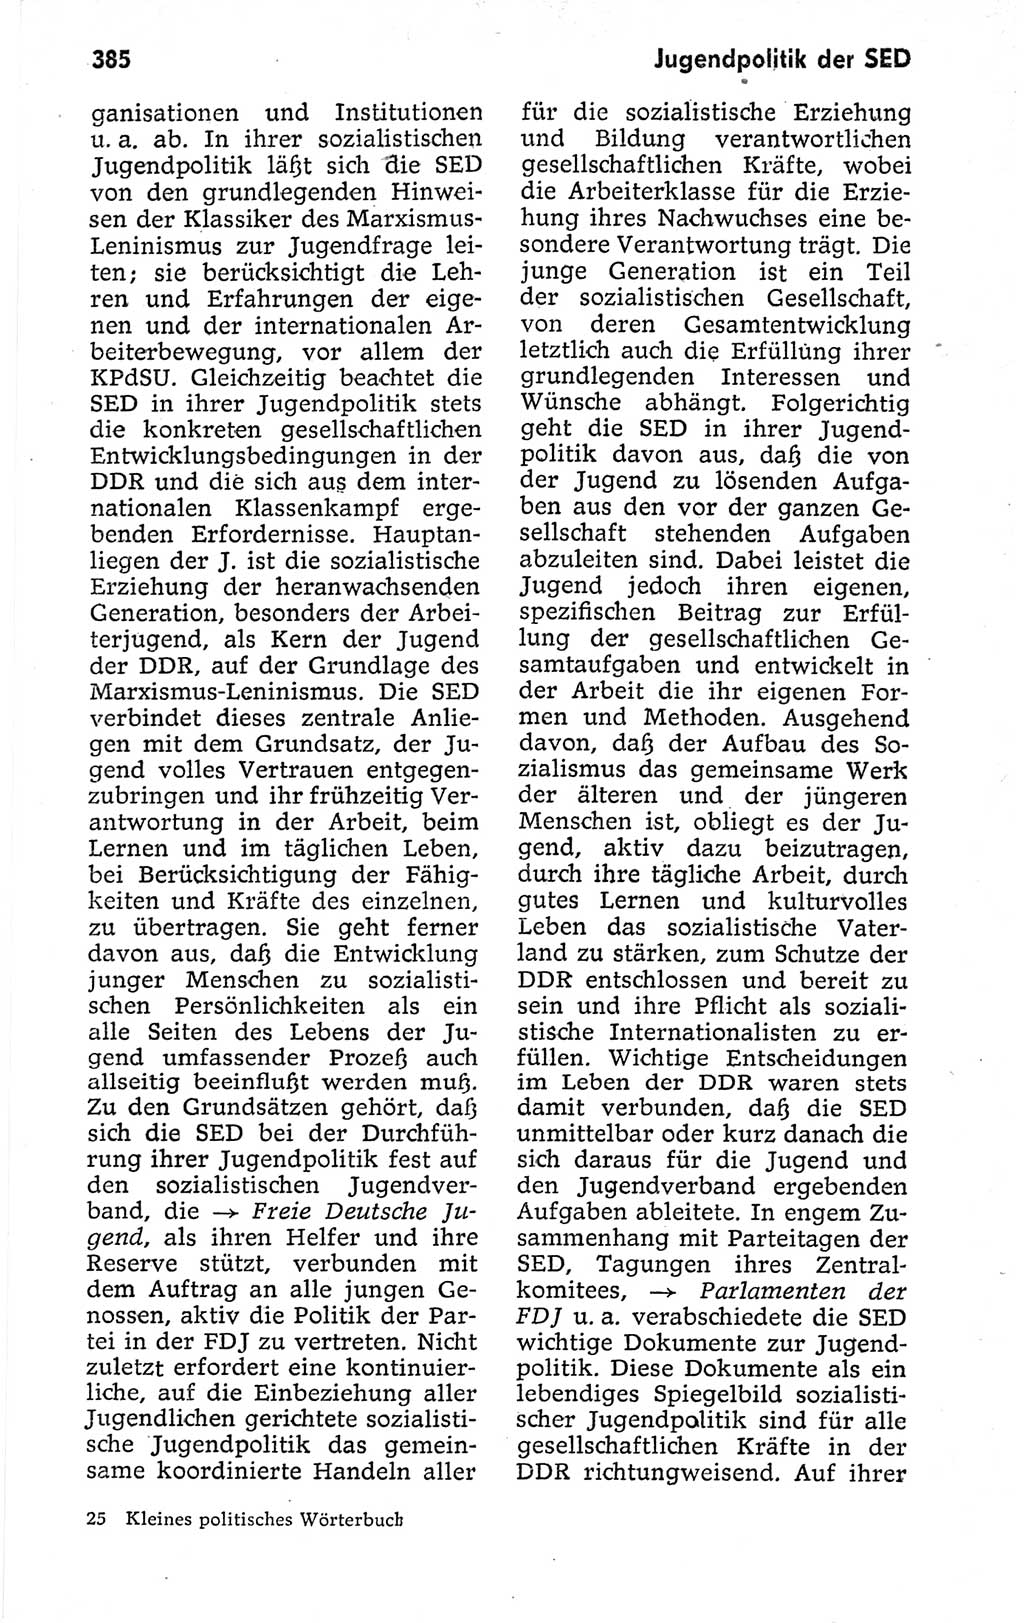 Kleines politisches Wörterbuch [Deutsche Demokratische Republik (DDR)] 1973, Seite 385 (Kl. pol. Wb. DDR 1973, S. 385)